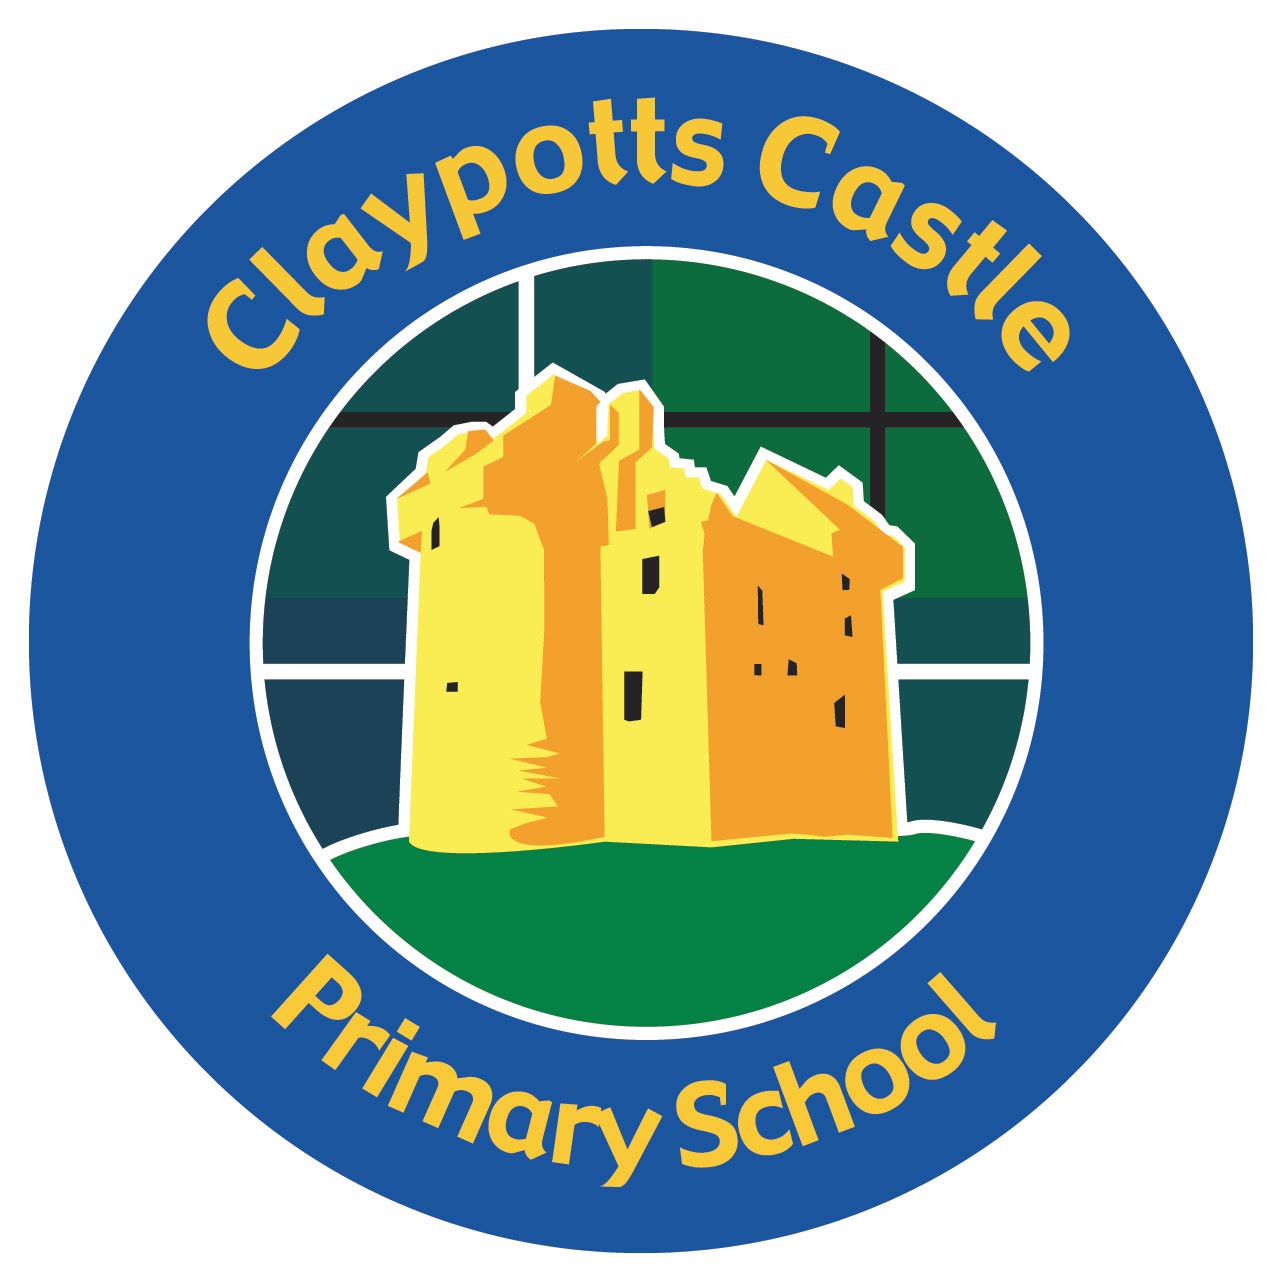 Claypotts Primary.jpg